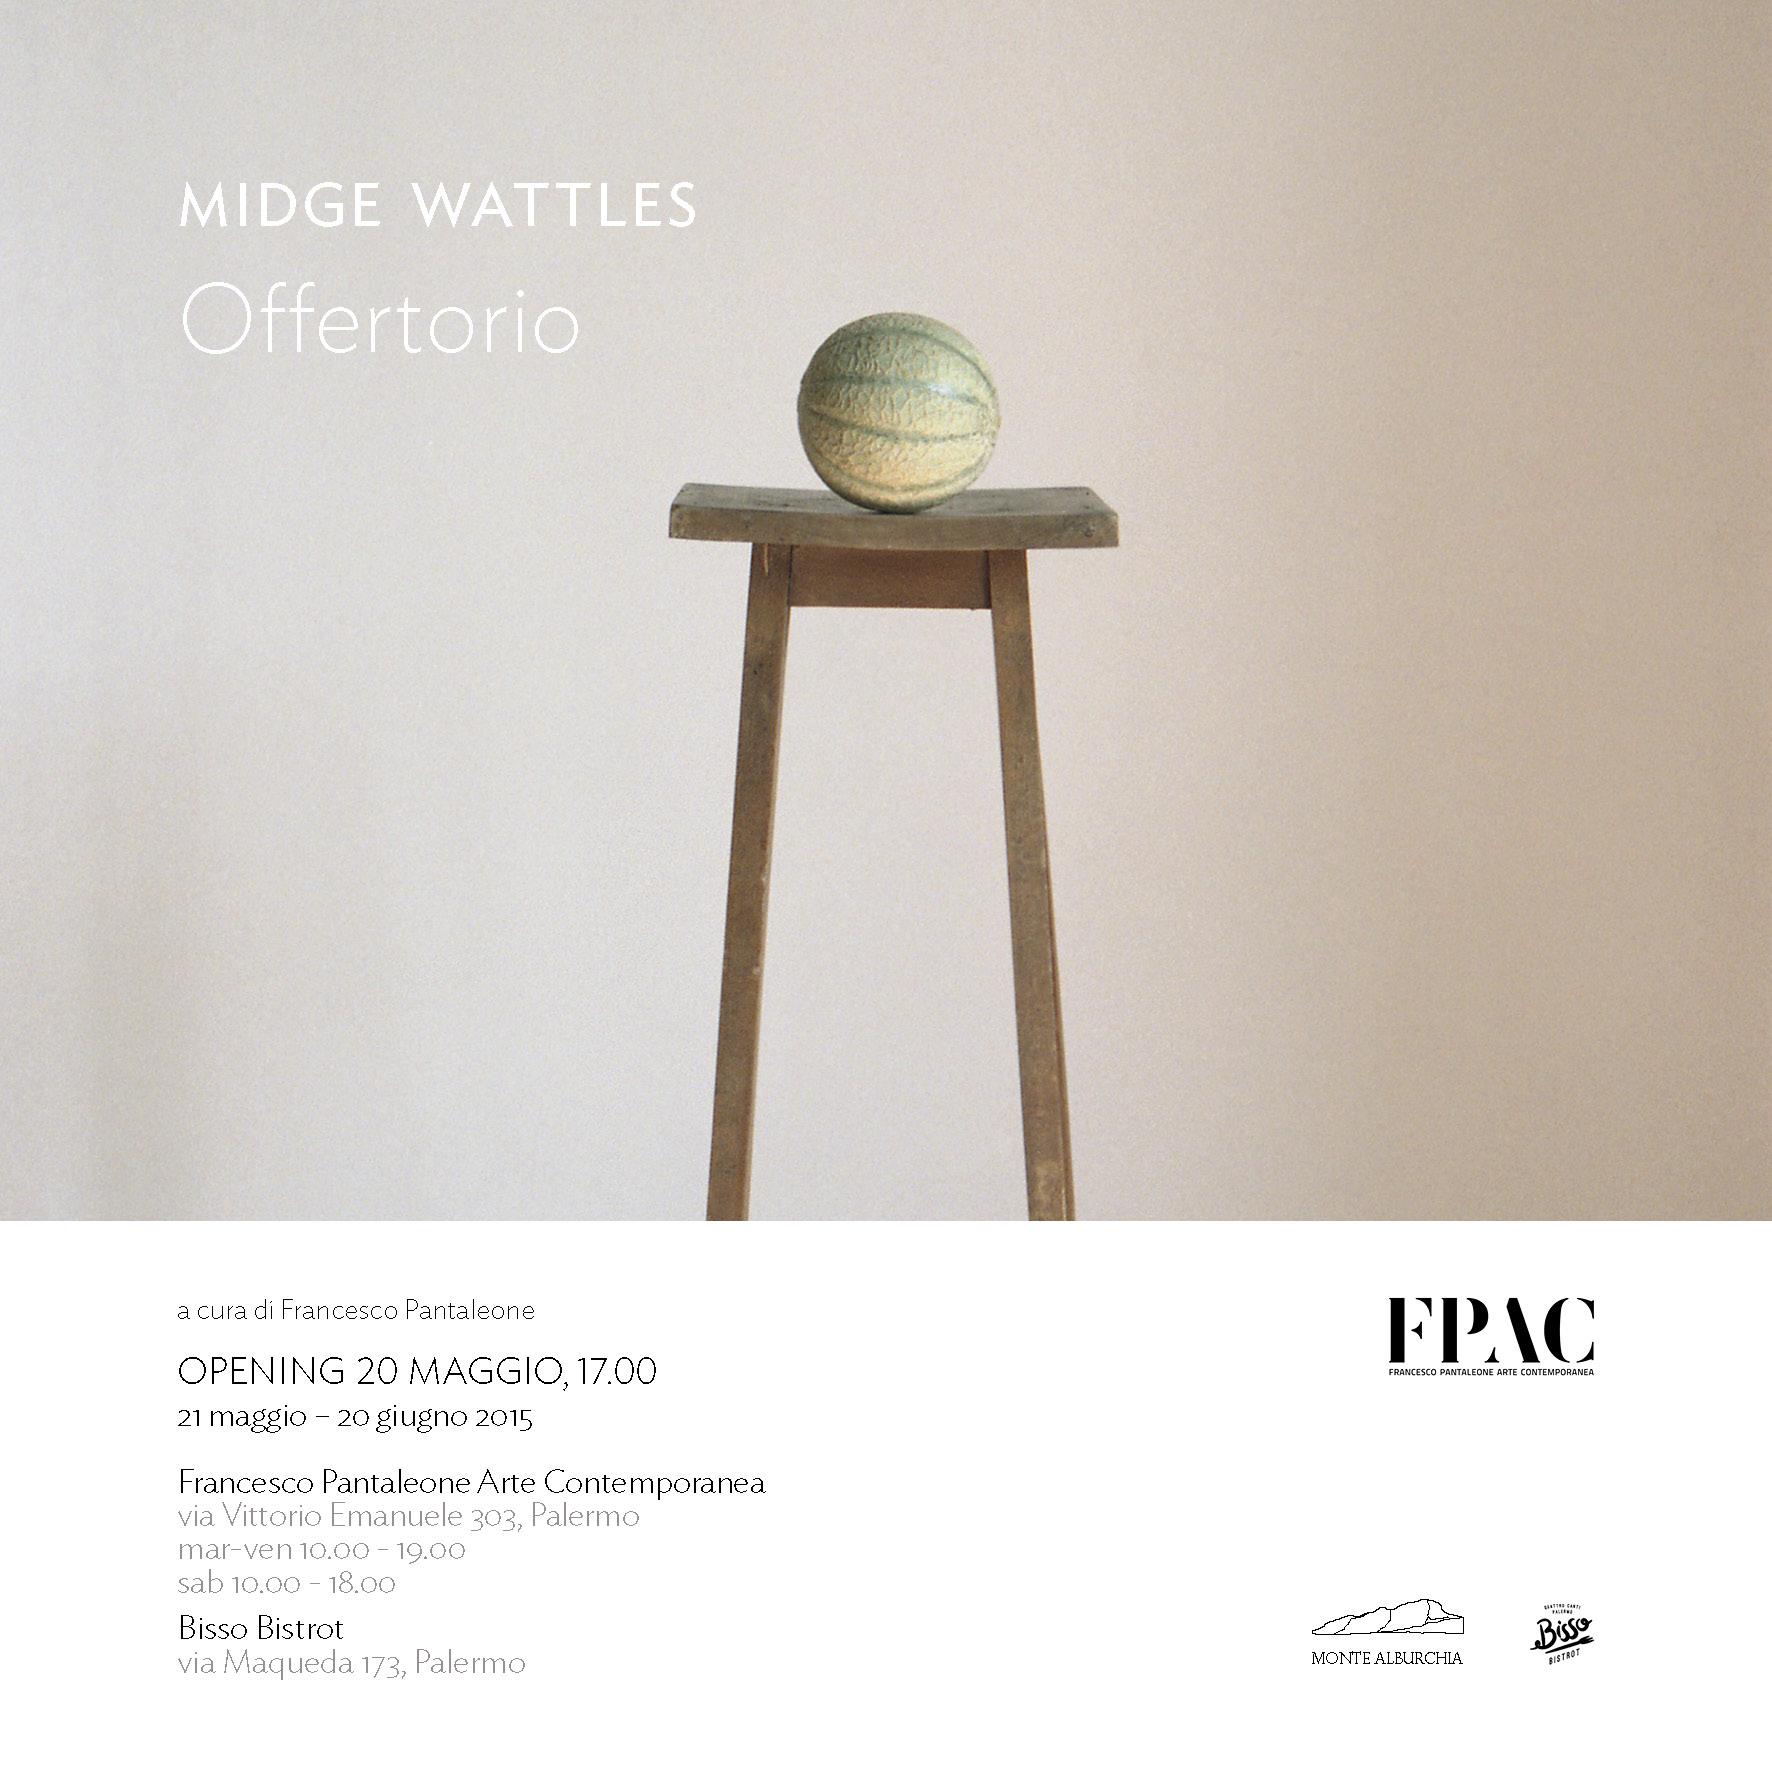 Midge Wattles – Offertorio